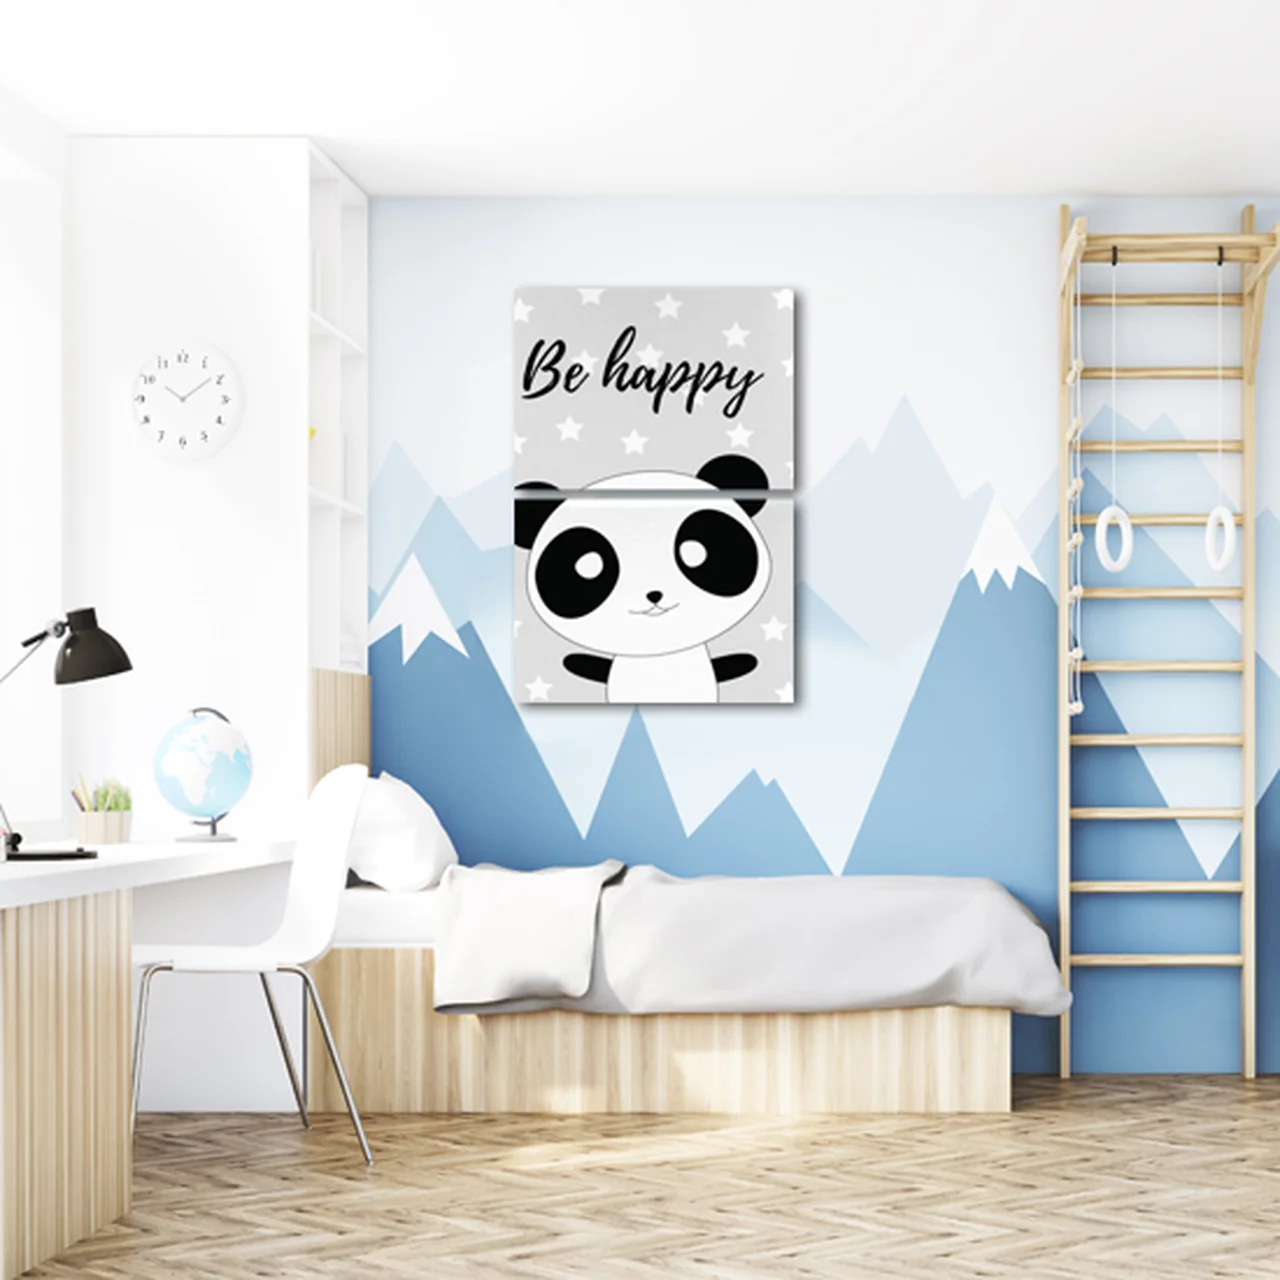 Uroczy obraz dla pokoju dziecięcego z motywem pandy i napisem be happy.